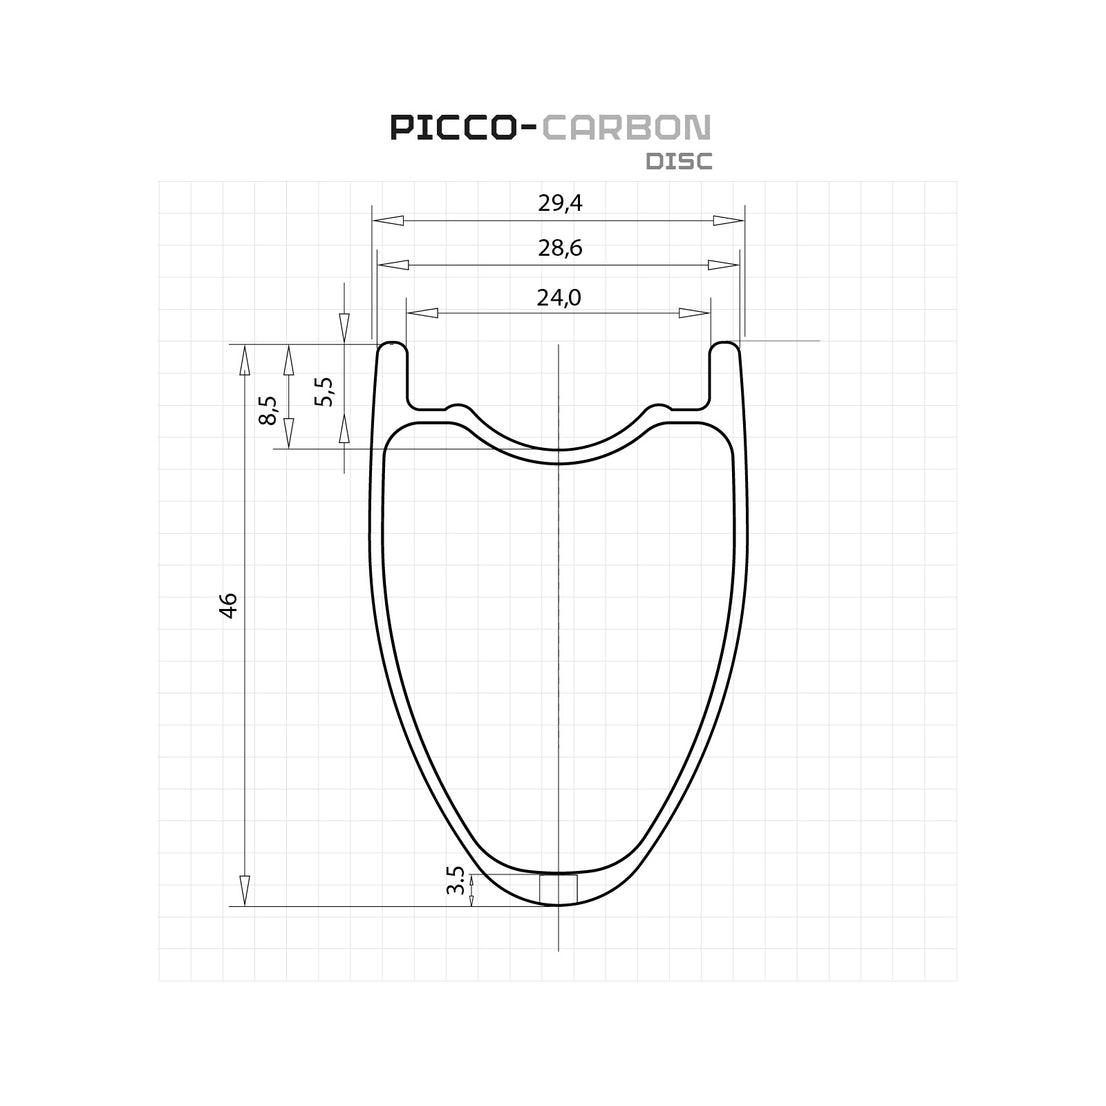 Picco Carbon Disc Rim Measurements